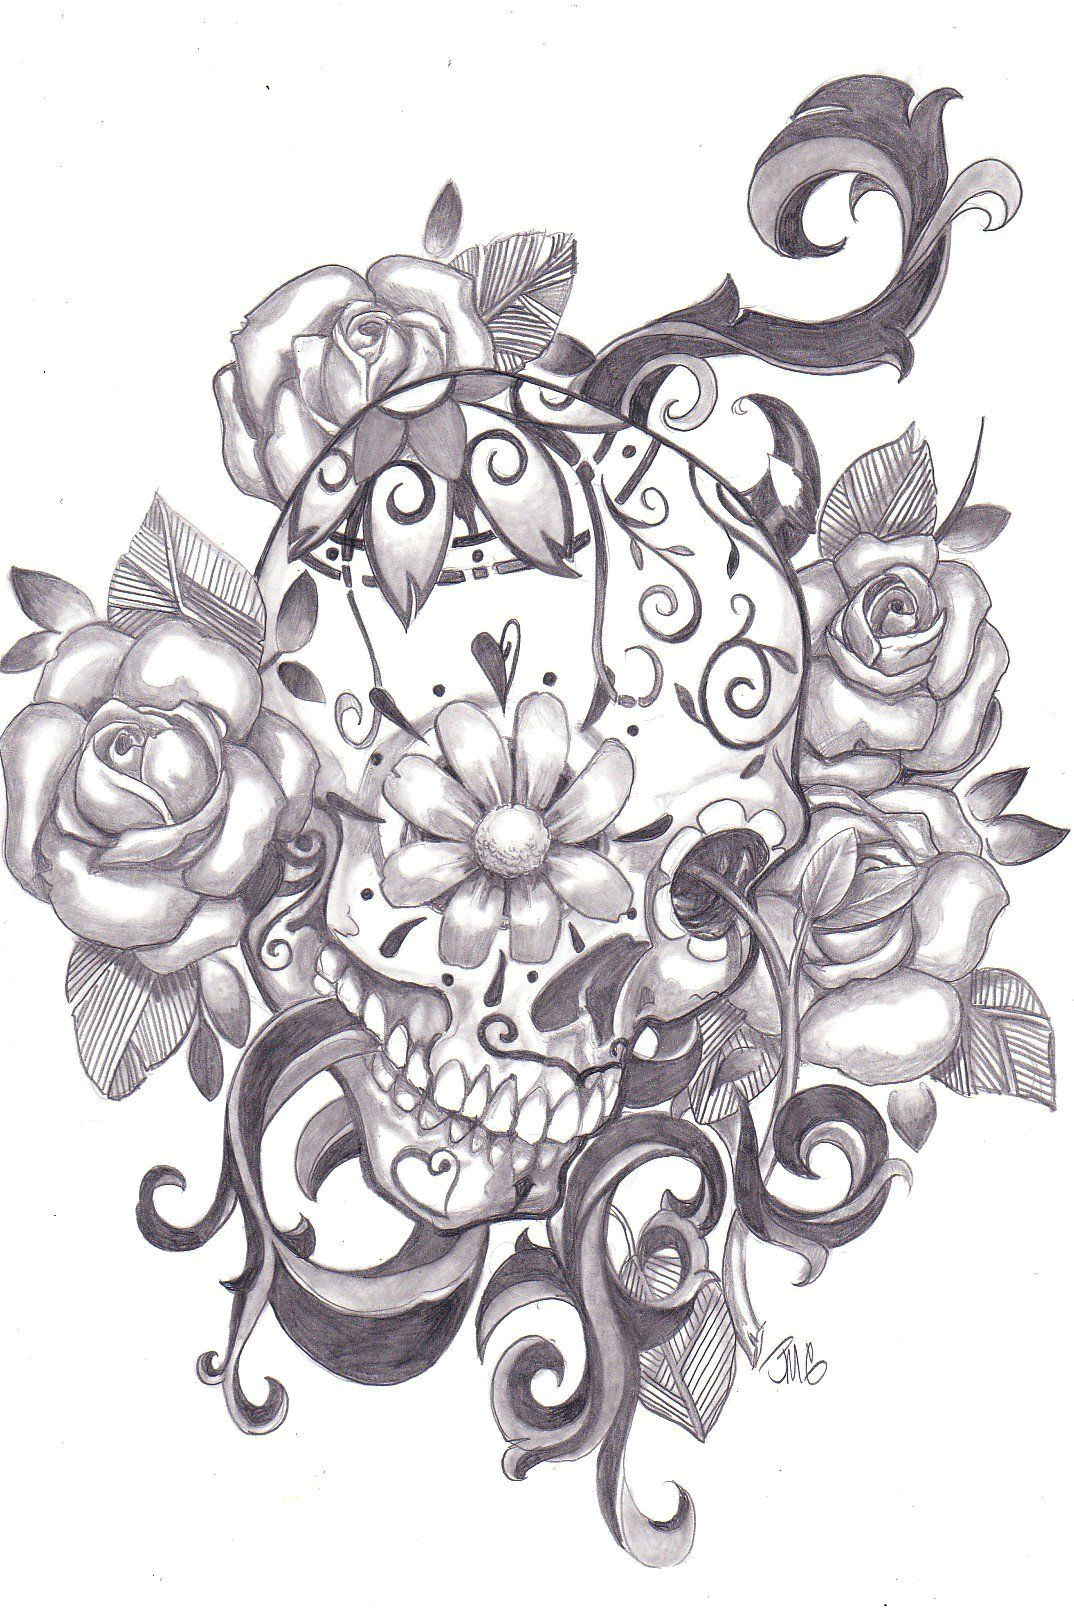 Drawings Of Mexican Flowers Les Quiero Dejar Imagenes De Calaveras Mexinas O Sugar Skull Ya Que